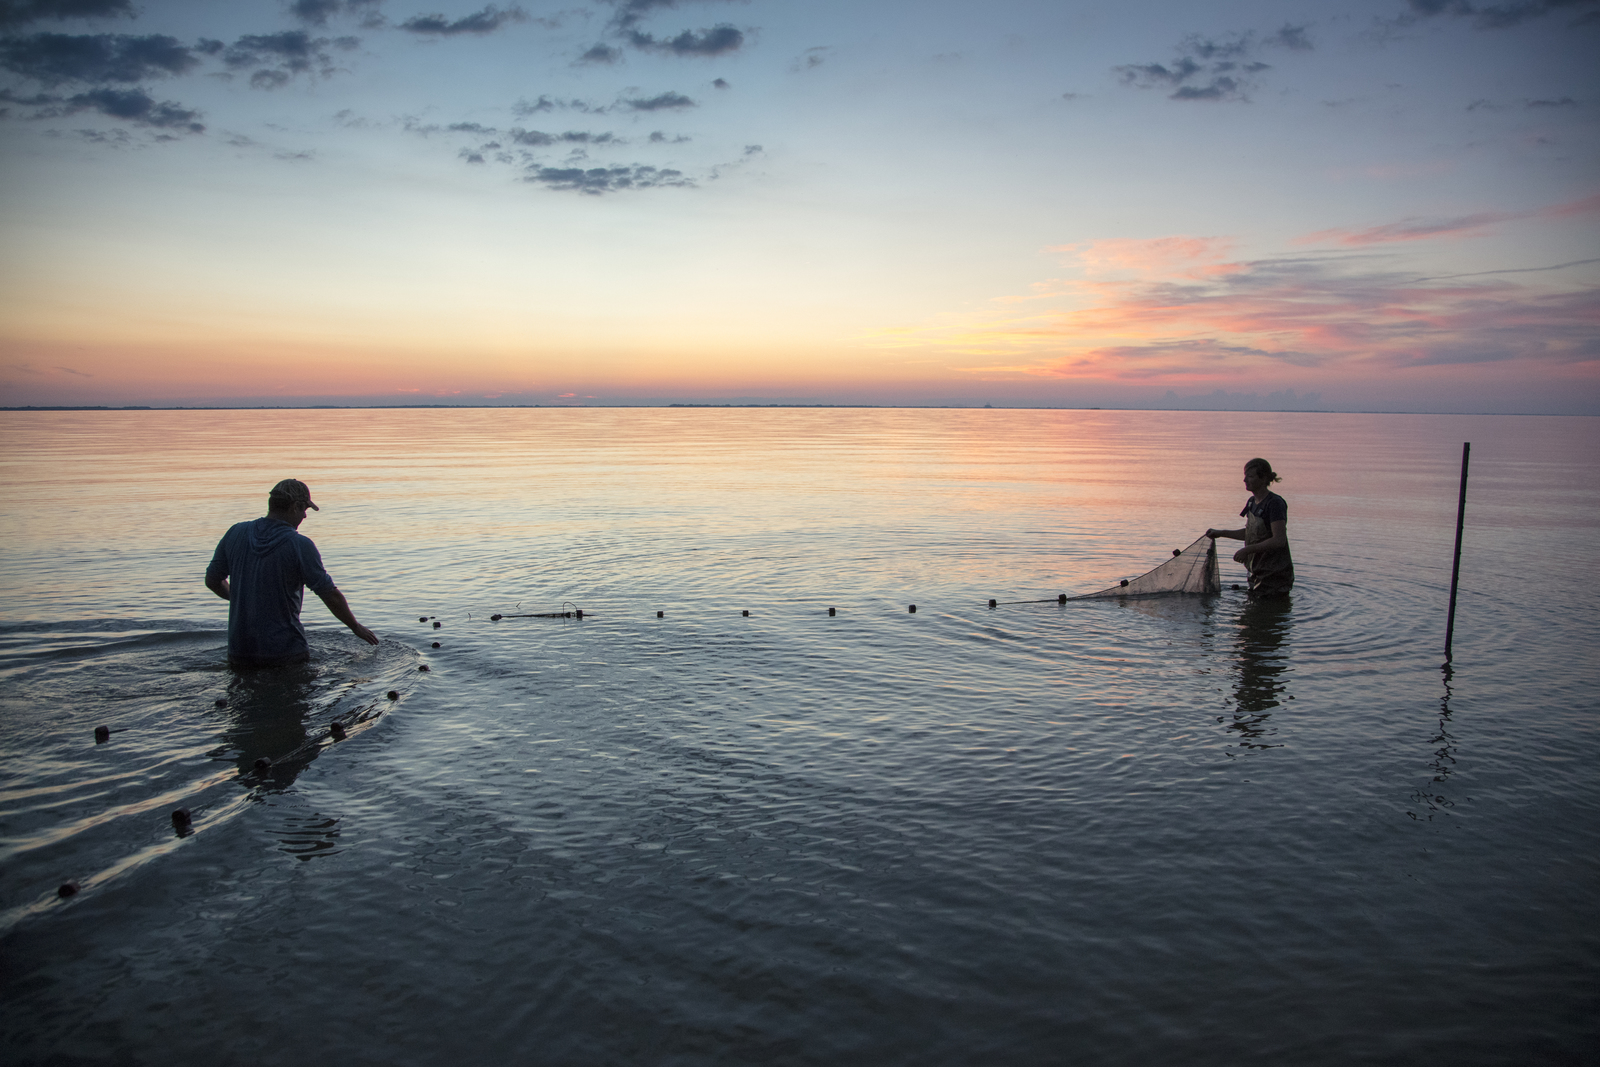 TNC staff set fish traps in Lake Eries at sunrise.